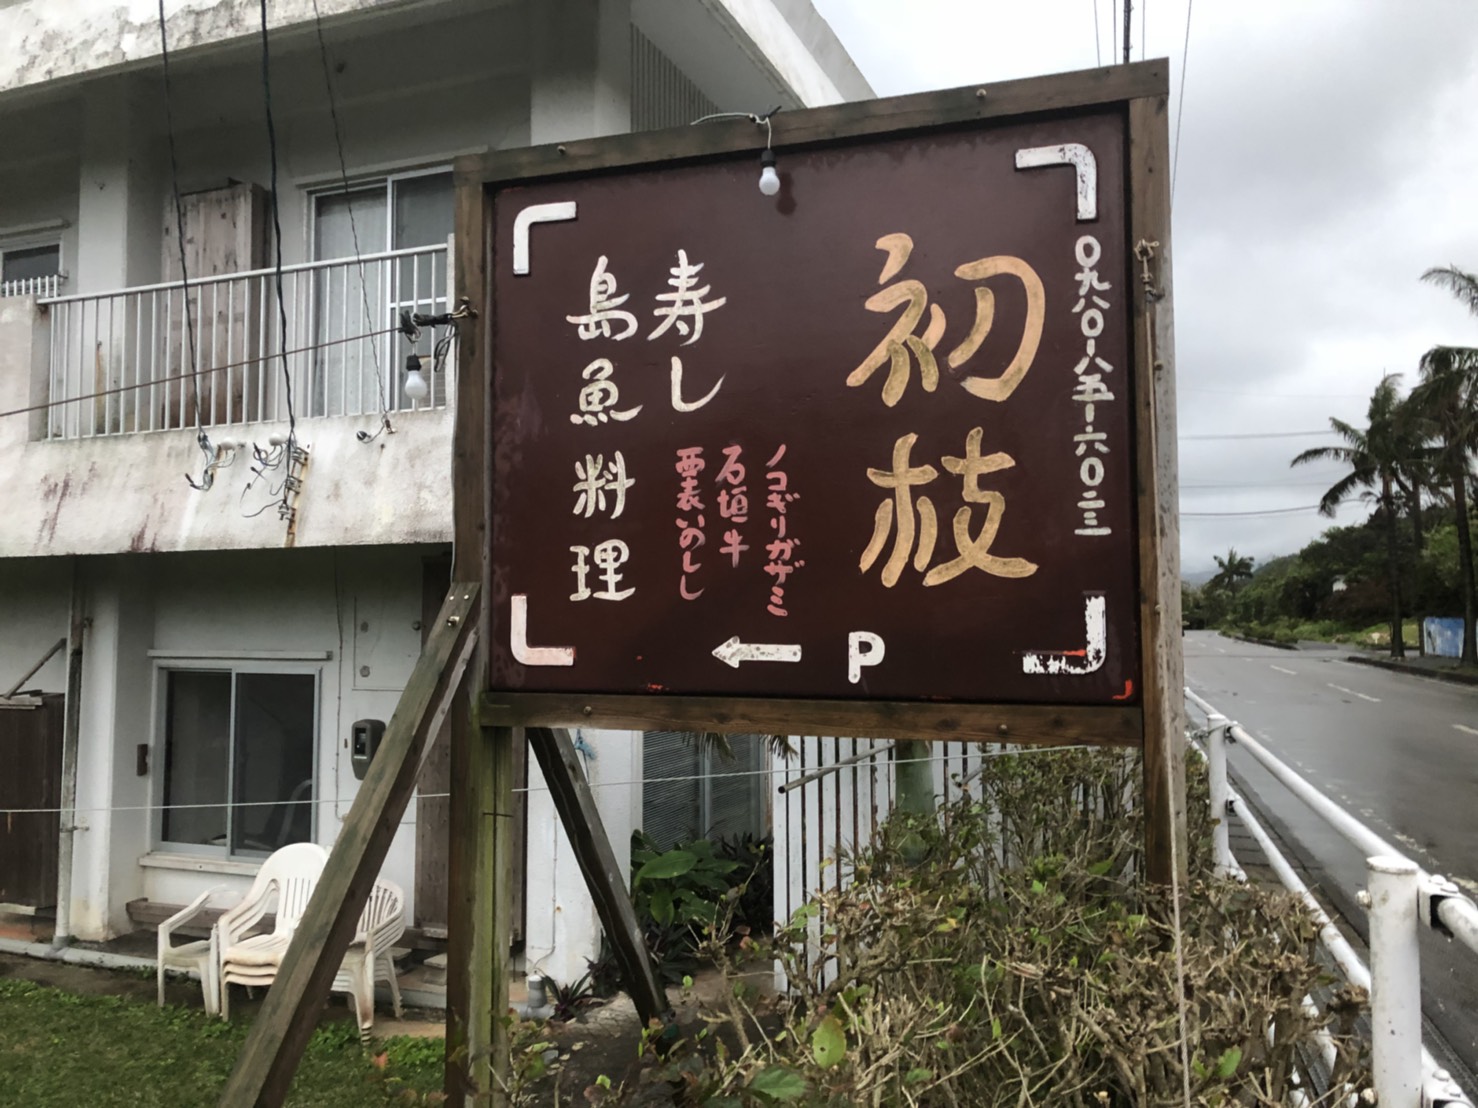 西表島でお寿司と言えば初枝へ！沖縄の新鮮なお魚や郷土料理がいただけますよ